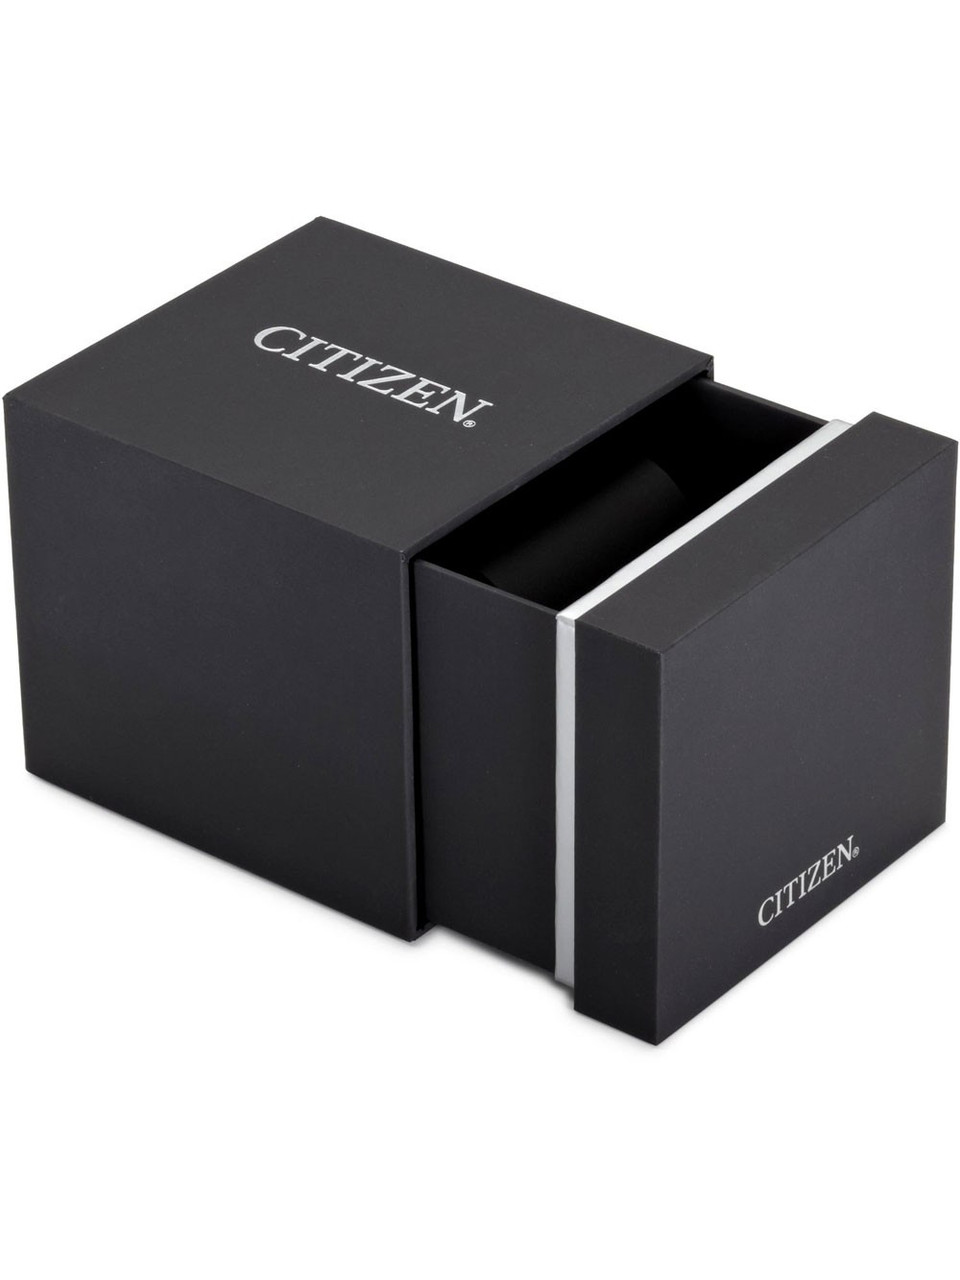 Citizen CA4471-80L Eco-Drive chrono 44 Watches owlica 10ATM | - Genuine